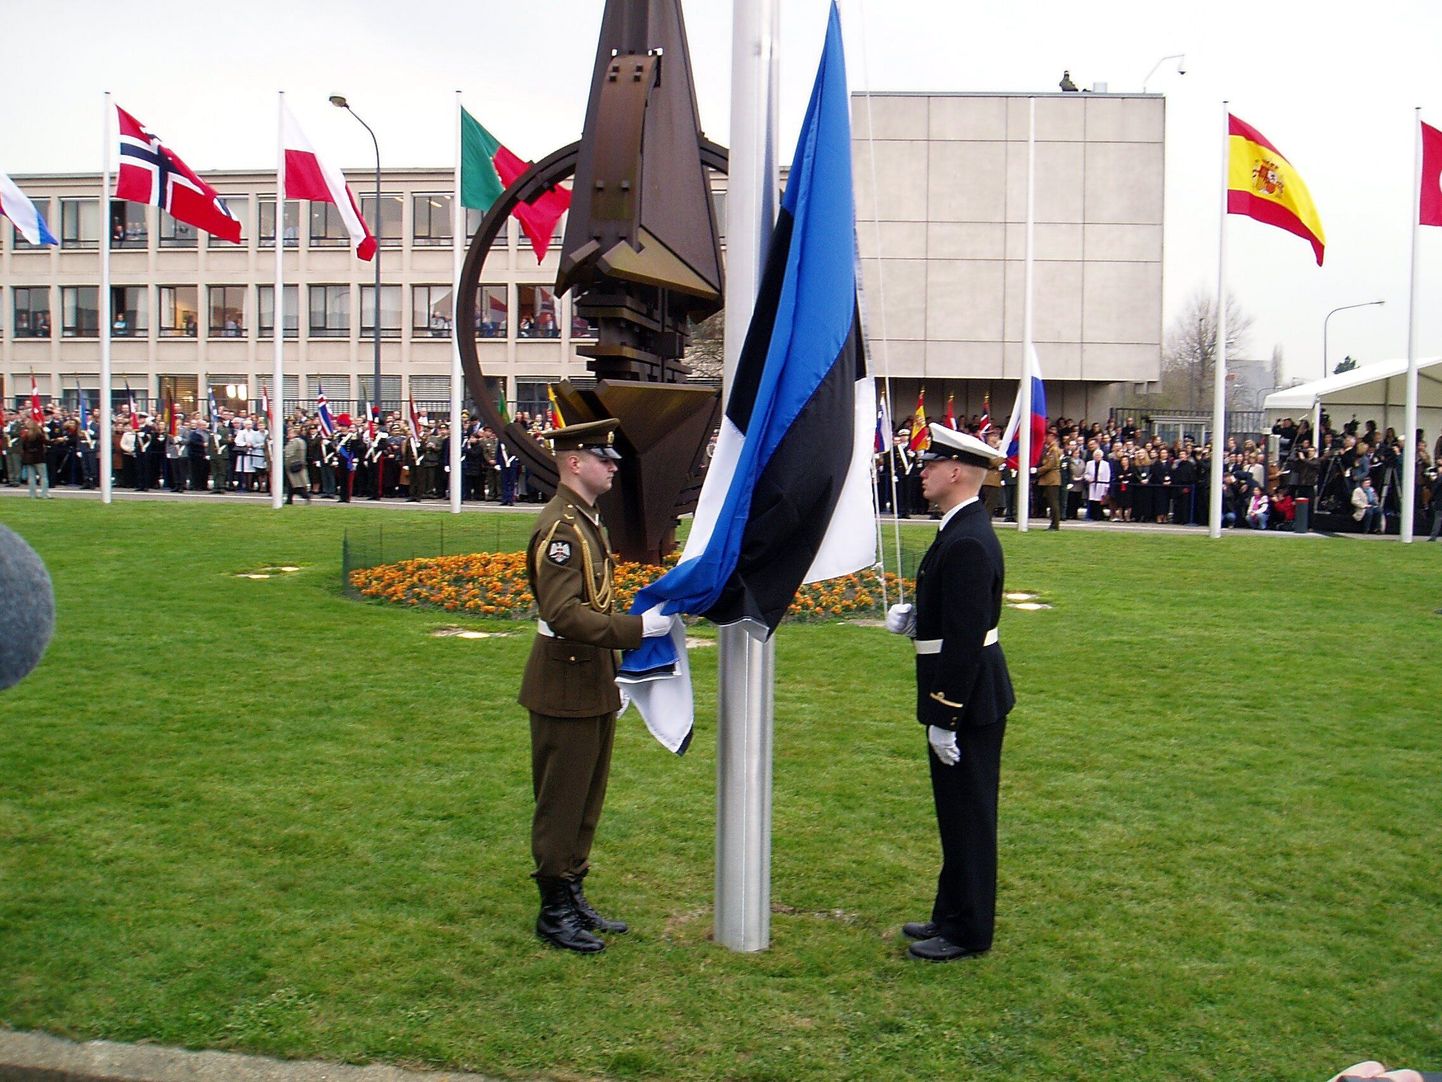 Eesti liitumine NATOga 31. märtsil 2004.
Pildil lippu heiskamas jalaväe õppekeskuse vahipataljoni veebel Janek Kapsta ja sama üksuse nooremleitnant Tarmo Teder.